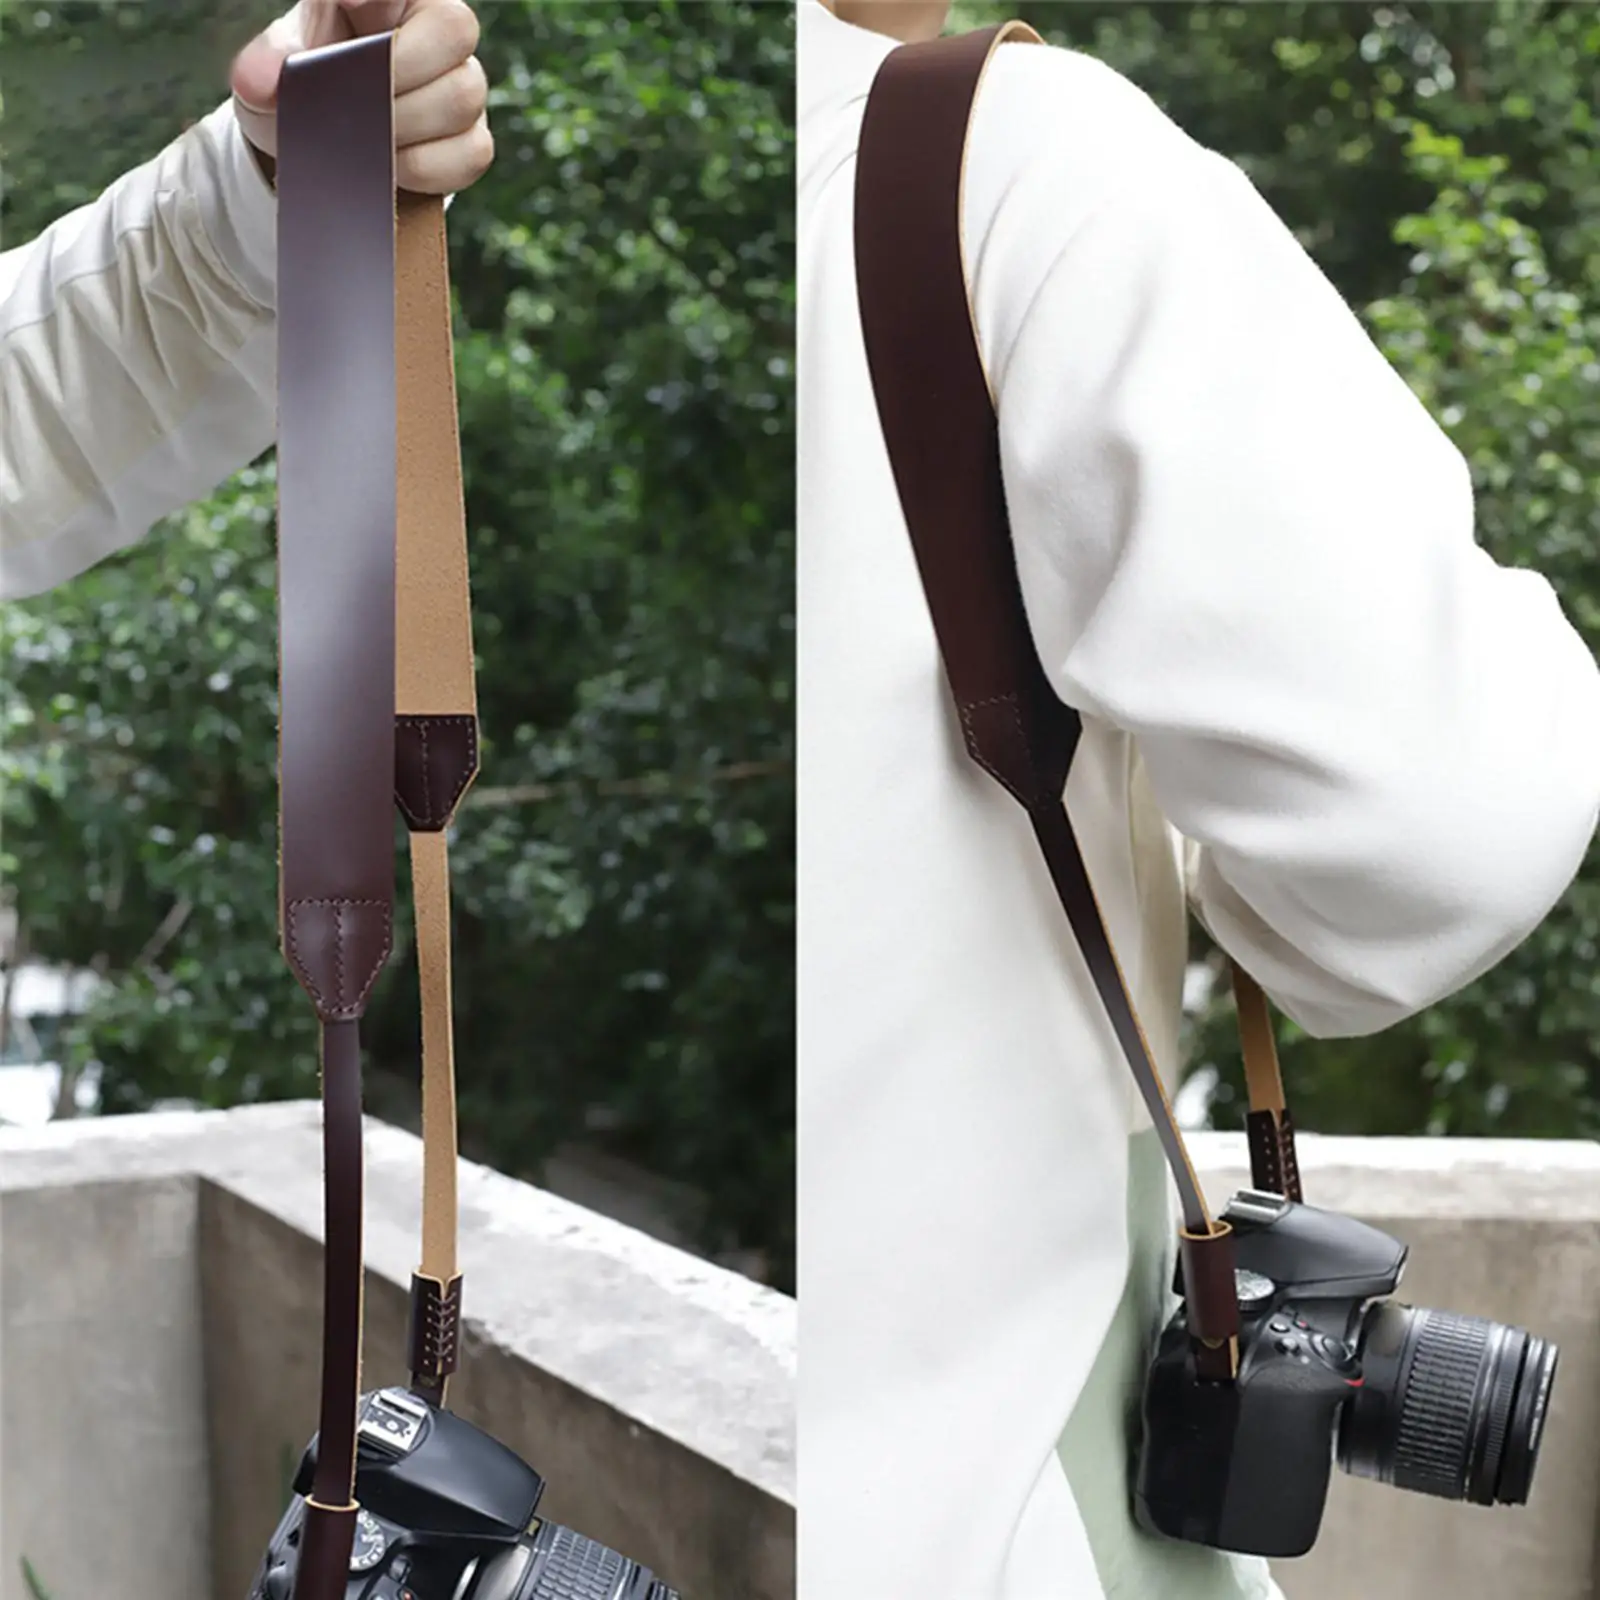 Camera Shoulder Neck Belt Comfortable Convenient Portable Vintage PU Leather for Slr DSLR Digital Camera Women Men